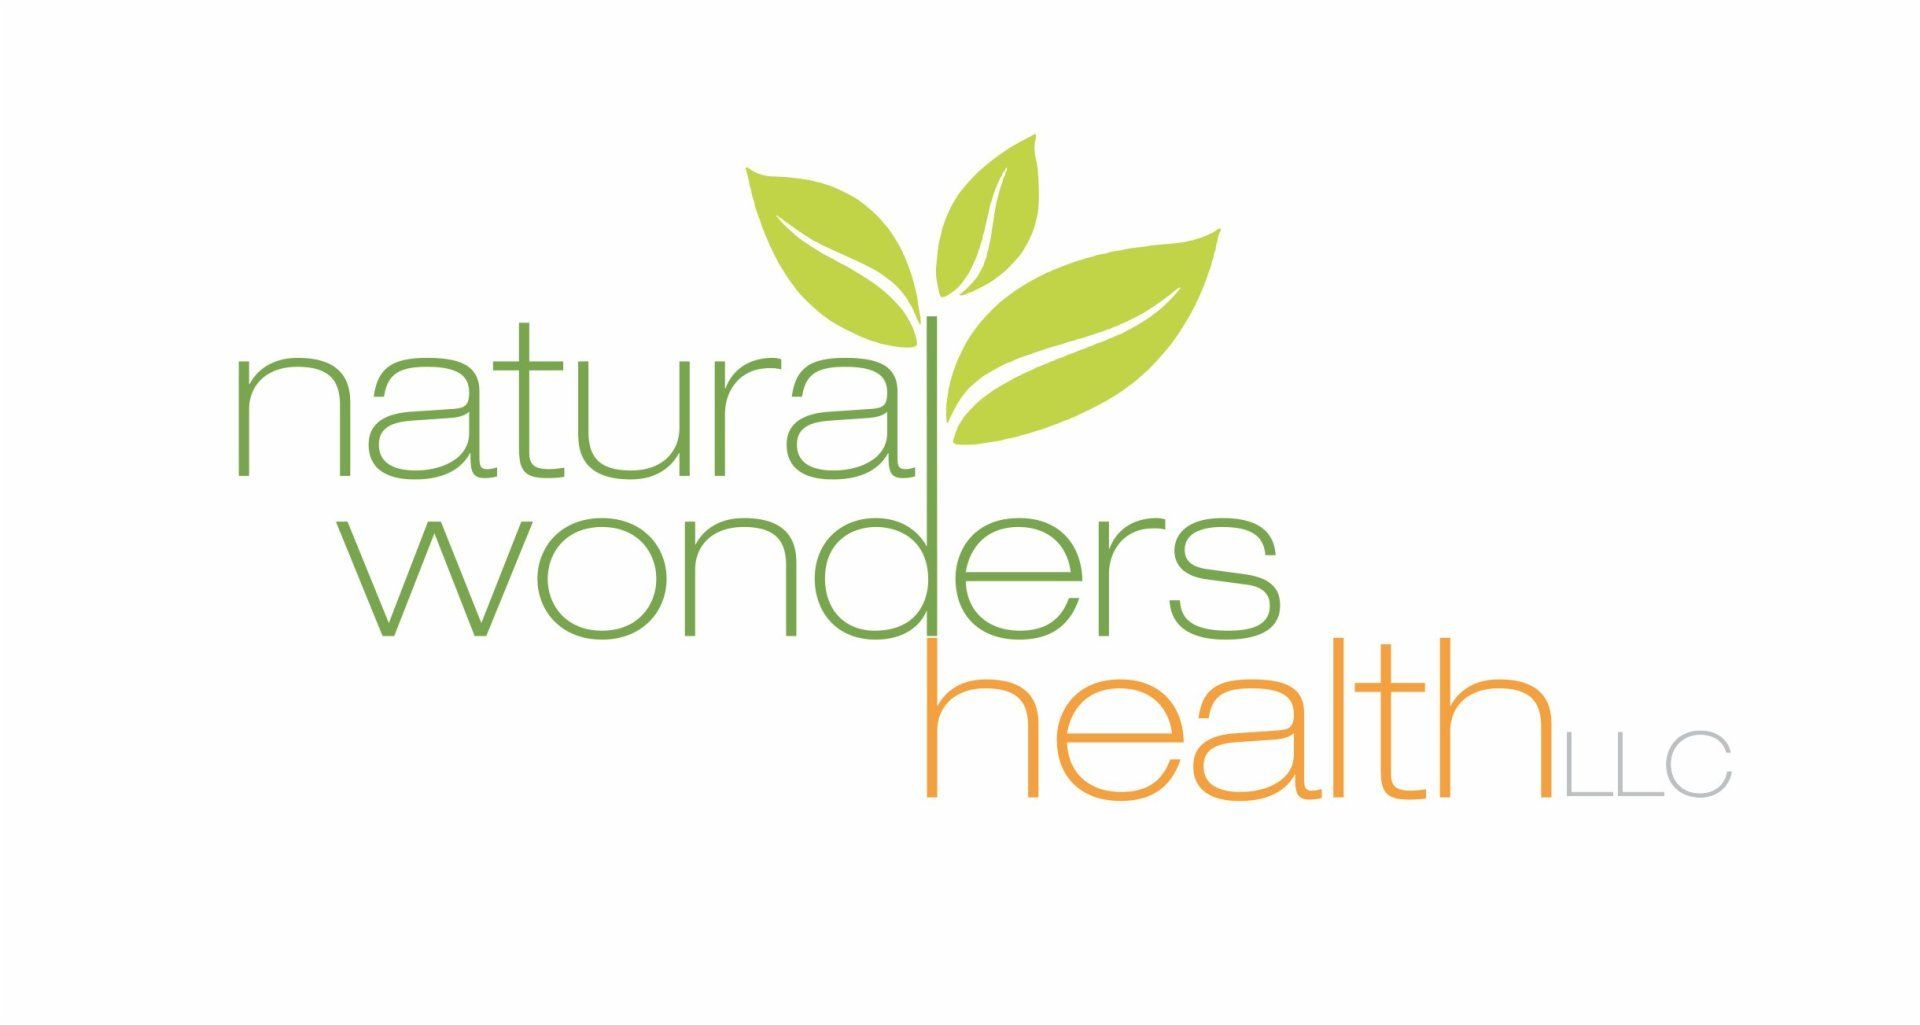 Natural Wonders Health - logo